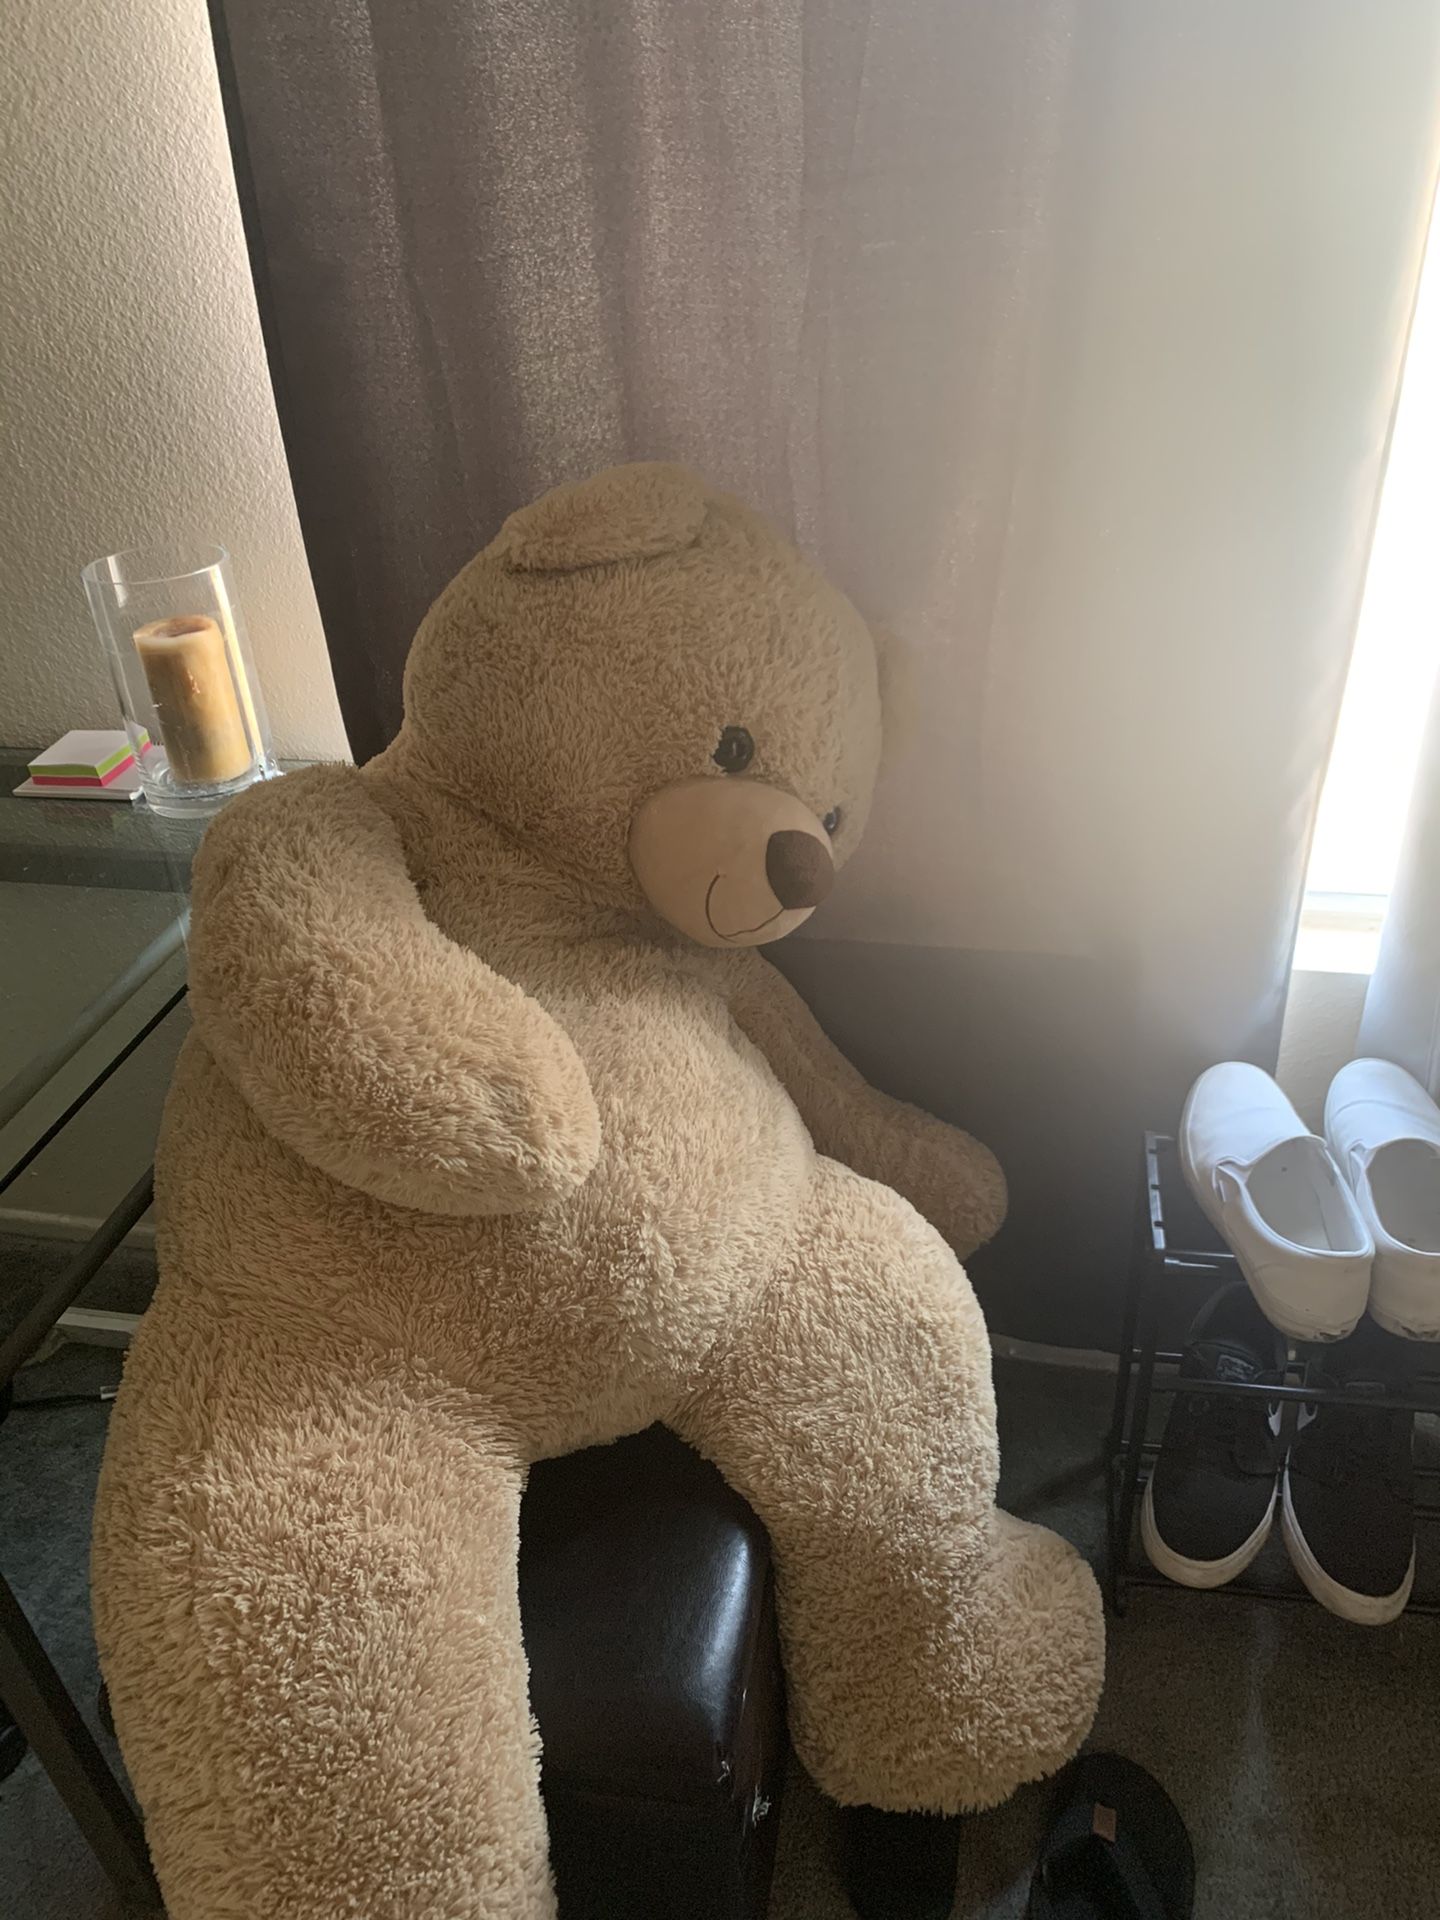 Life size teddy bear